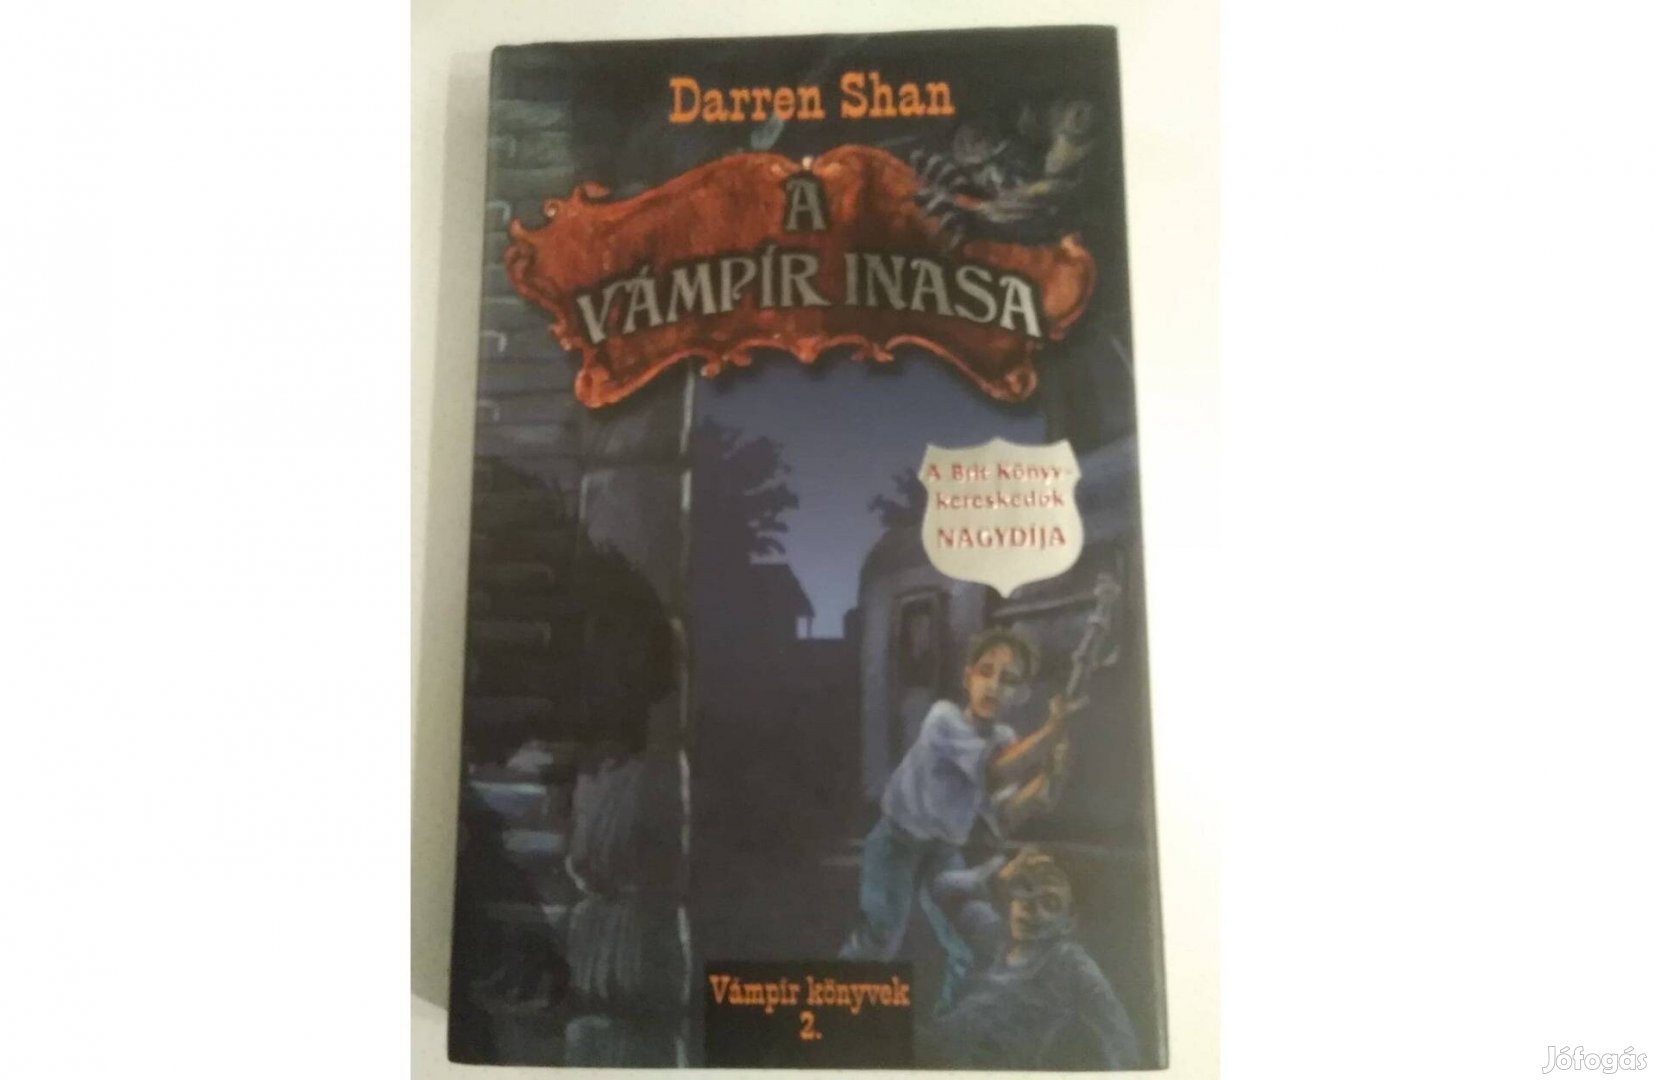 Daren Shan: A vámpír inasa c. könyv eladó!